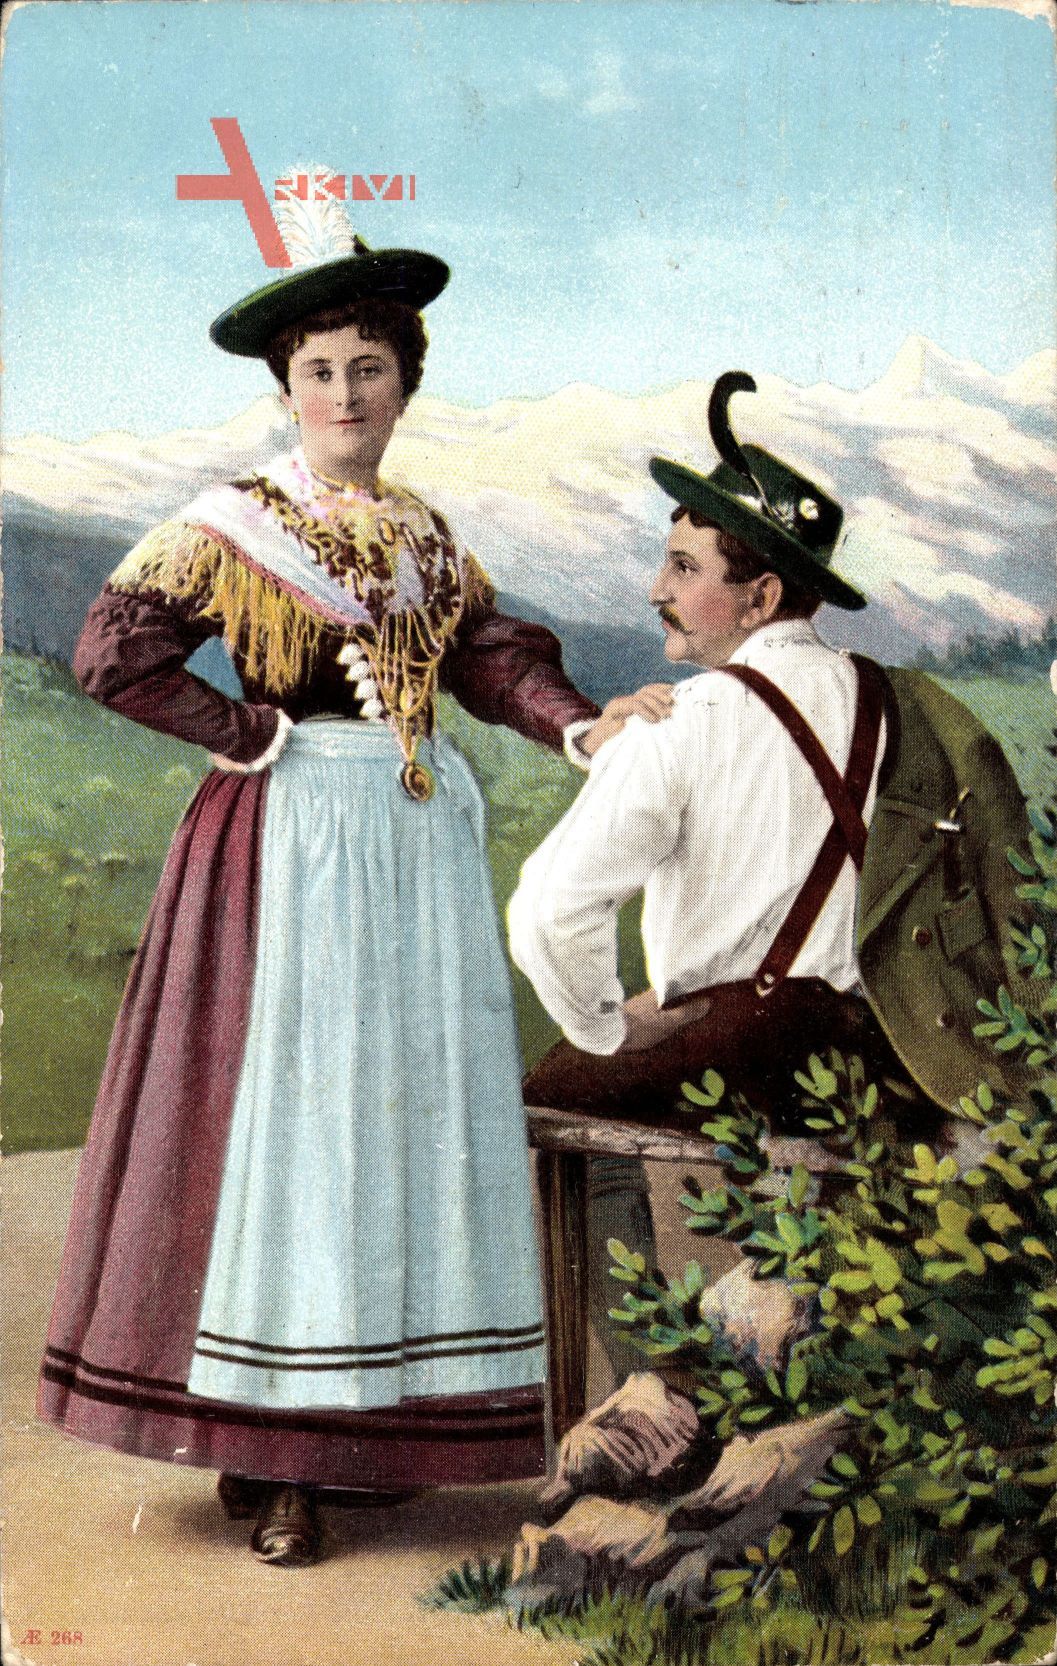 Paar in bayrischen Trachten, Lederhosen, Dirndl